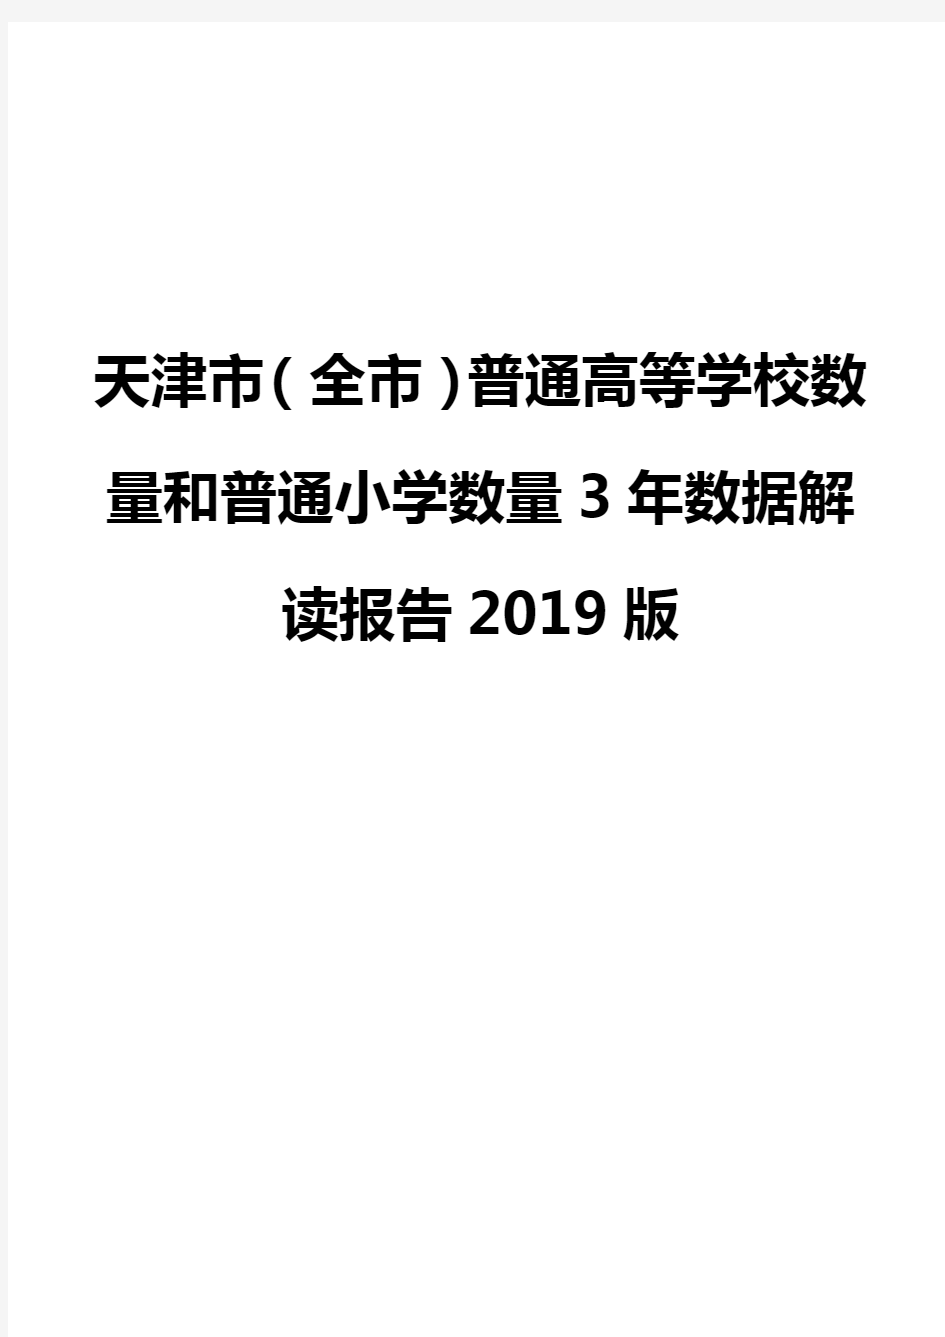 天津市(全市)普通高等学校数量和普通小学数量3年数据解读报告2019版